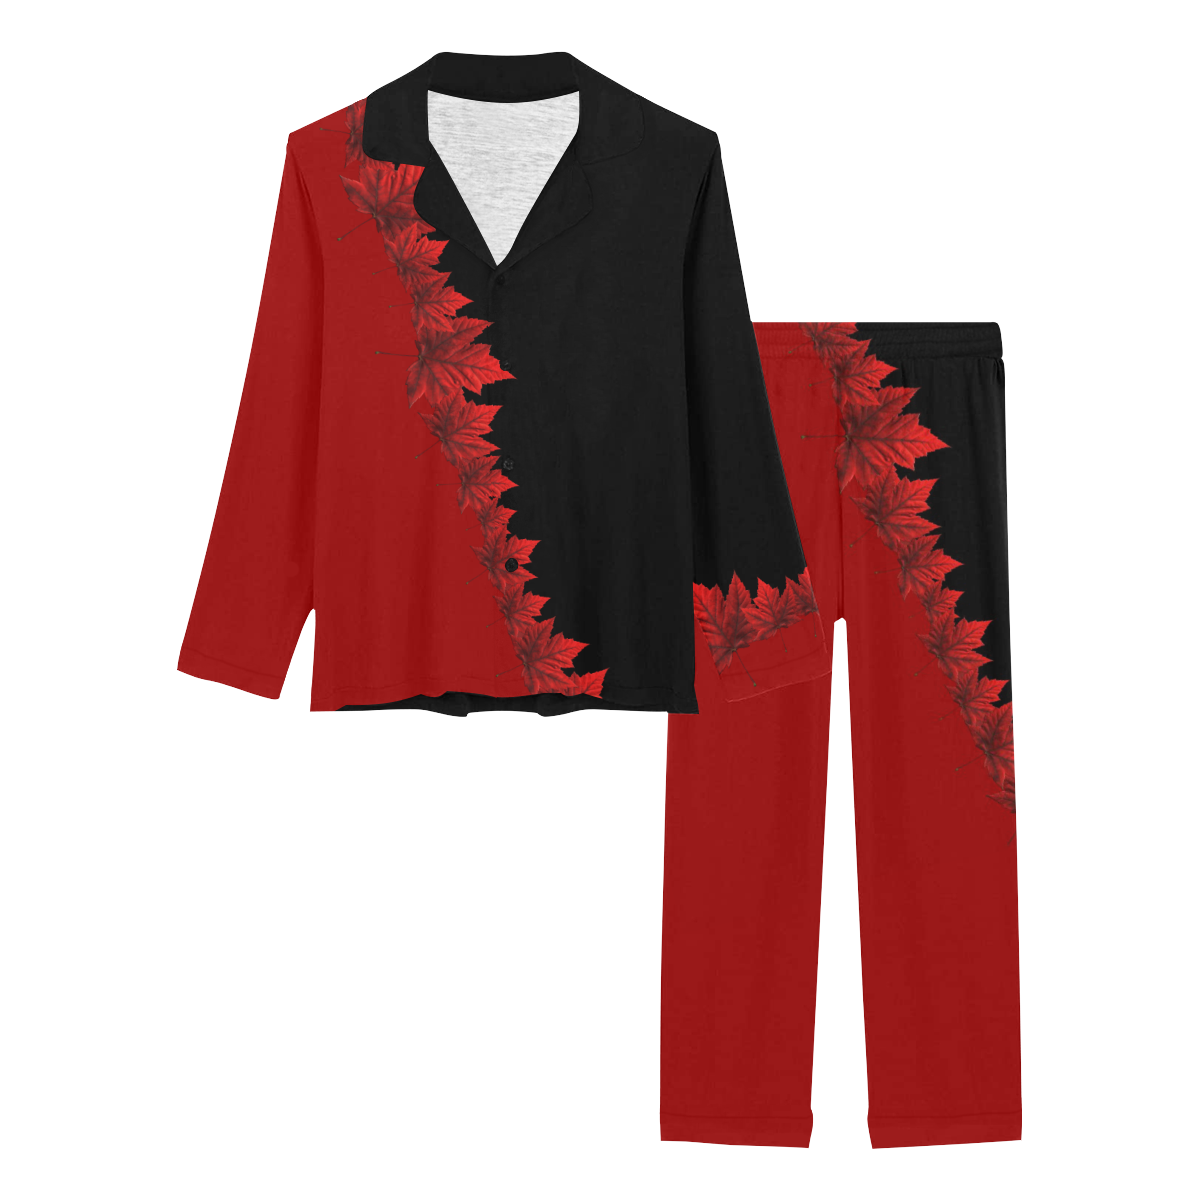 Canada Maple Leaf Sleepwear / Loungewear Women's Long Pajama Set